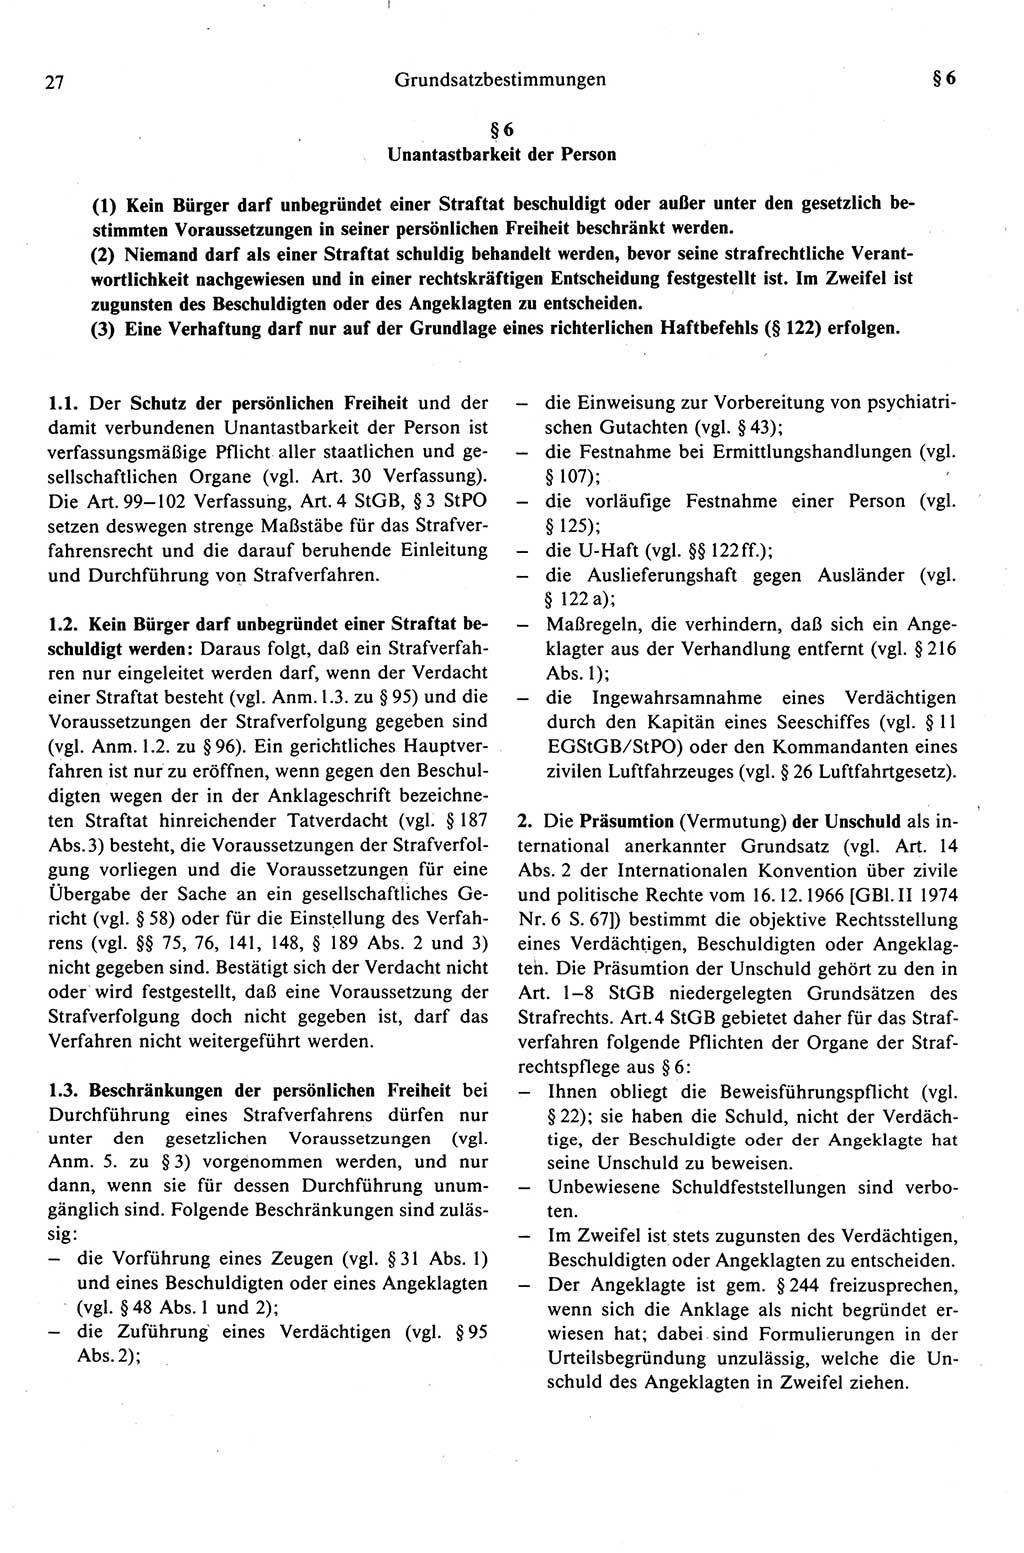 Strafprozeßrecht der DDR (Deutsche Demokratische Republik), Kommentar zur Strafprozeßordnung (StPO) 1989, Seite 27 (Strafprozeßr. DDR Komm. StPO 1989, S. 27)